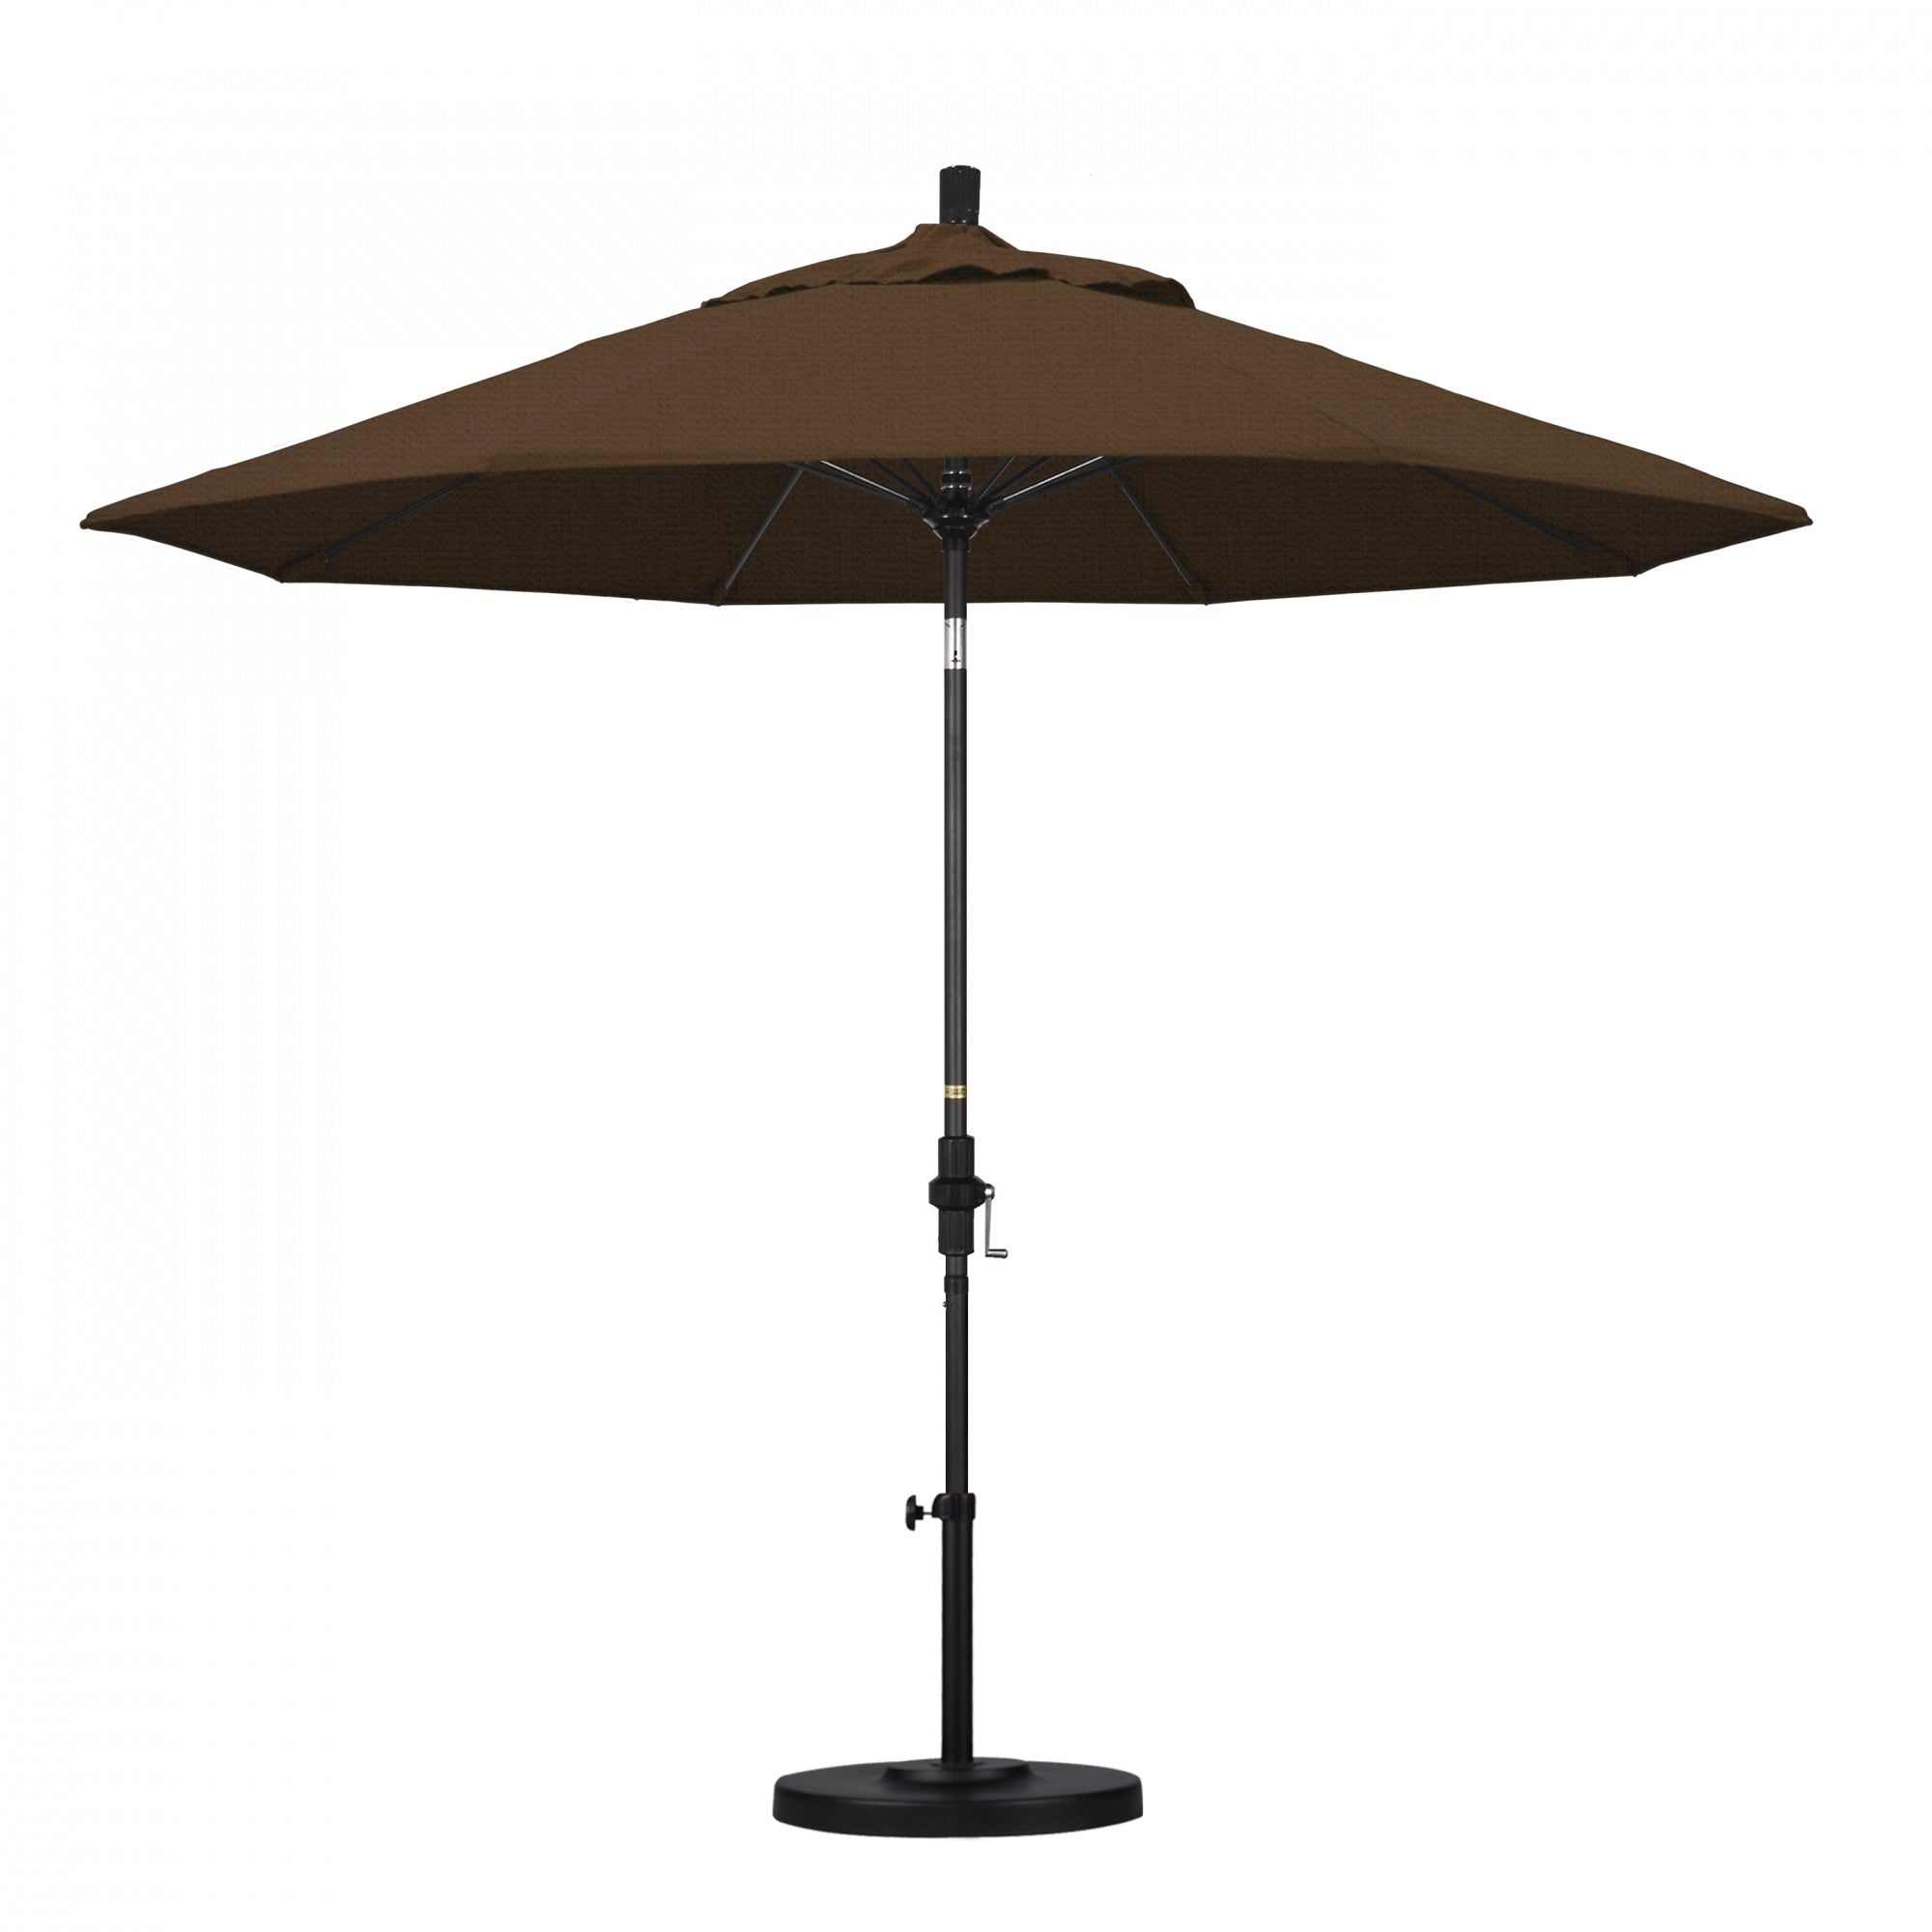 California Umbrella - 9' - Patio Umbrella Umbrella - Aluminum Pole - Teak - Olefin - GSCUF908705-F71